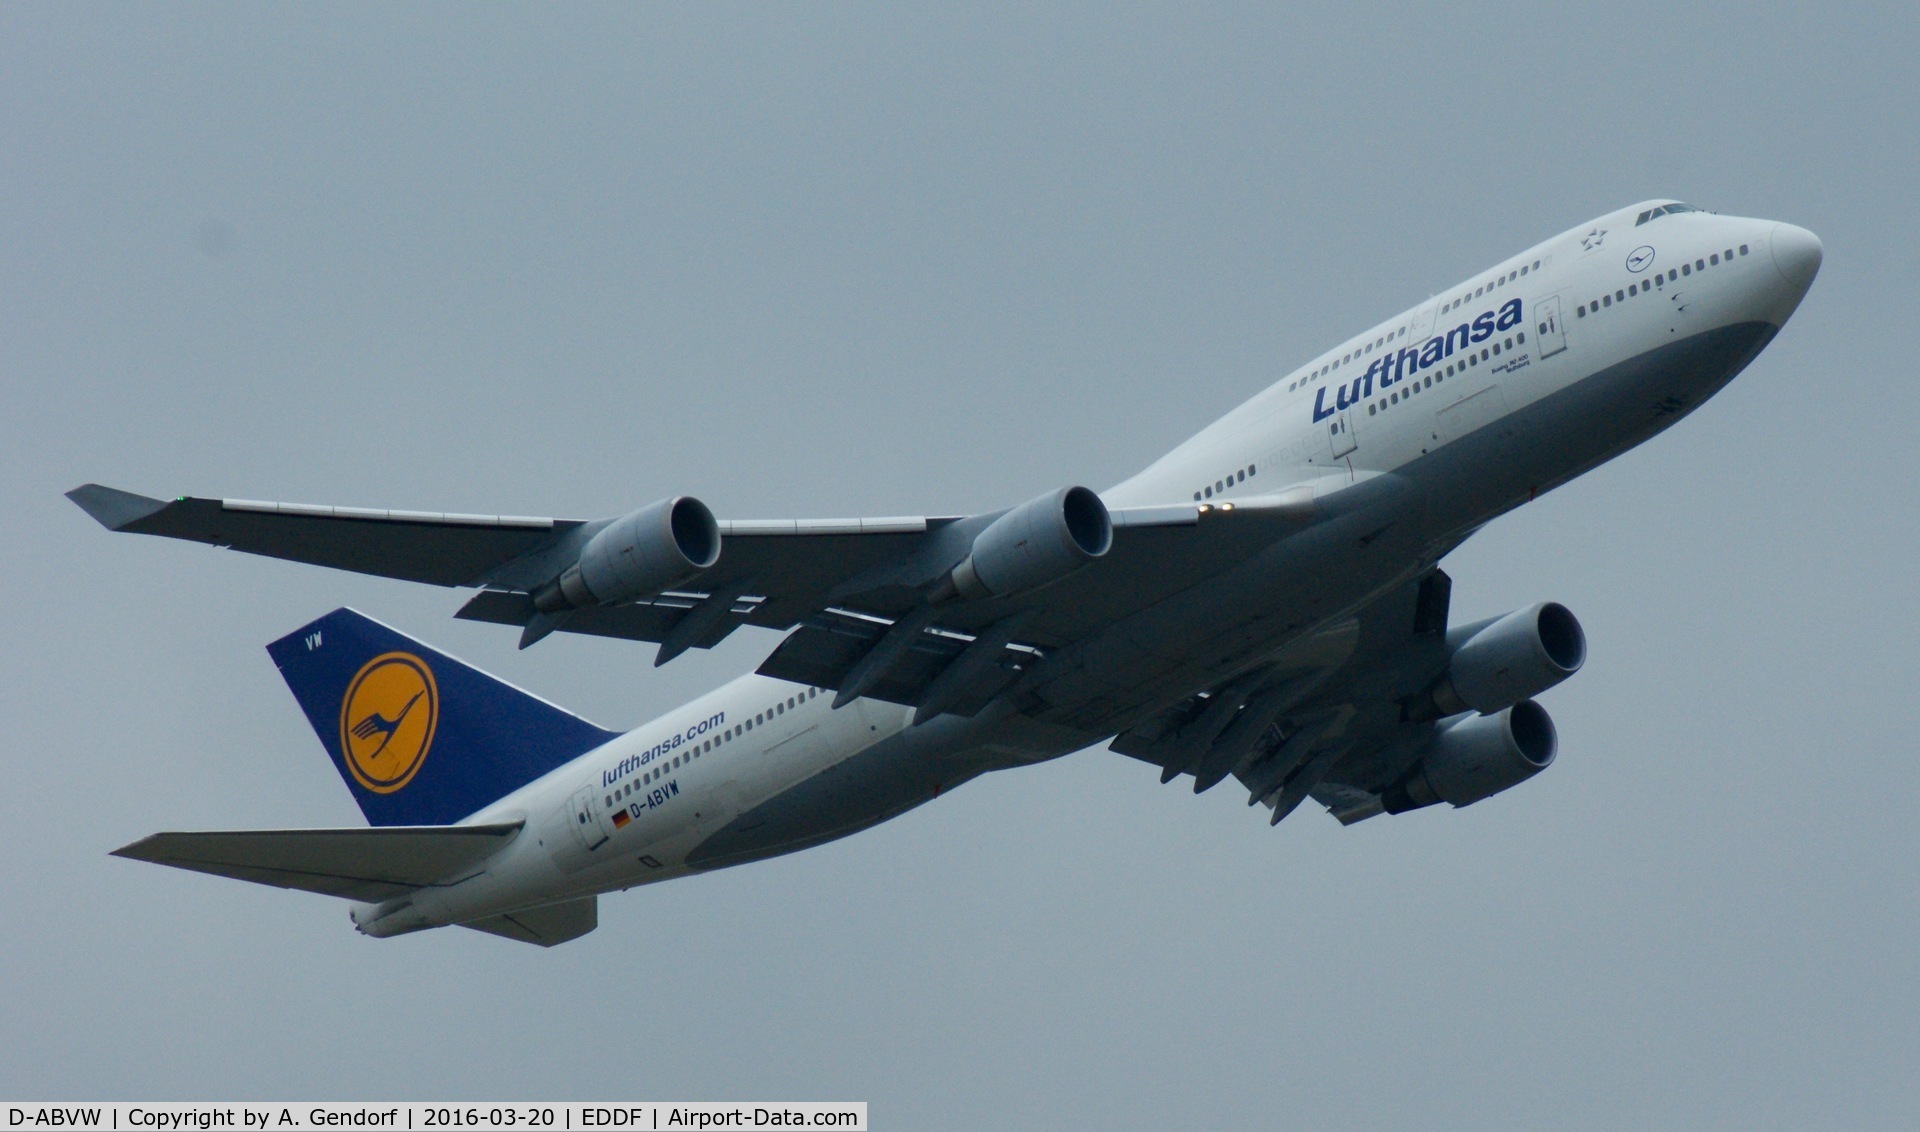 D-ABVW, 1999 Boeing 747-430 C/N 29493, Lufthansa, is here climbing out at Frankfurt Rhein/Main(EDDF)